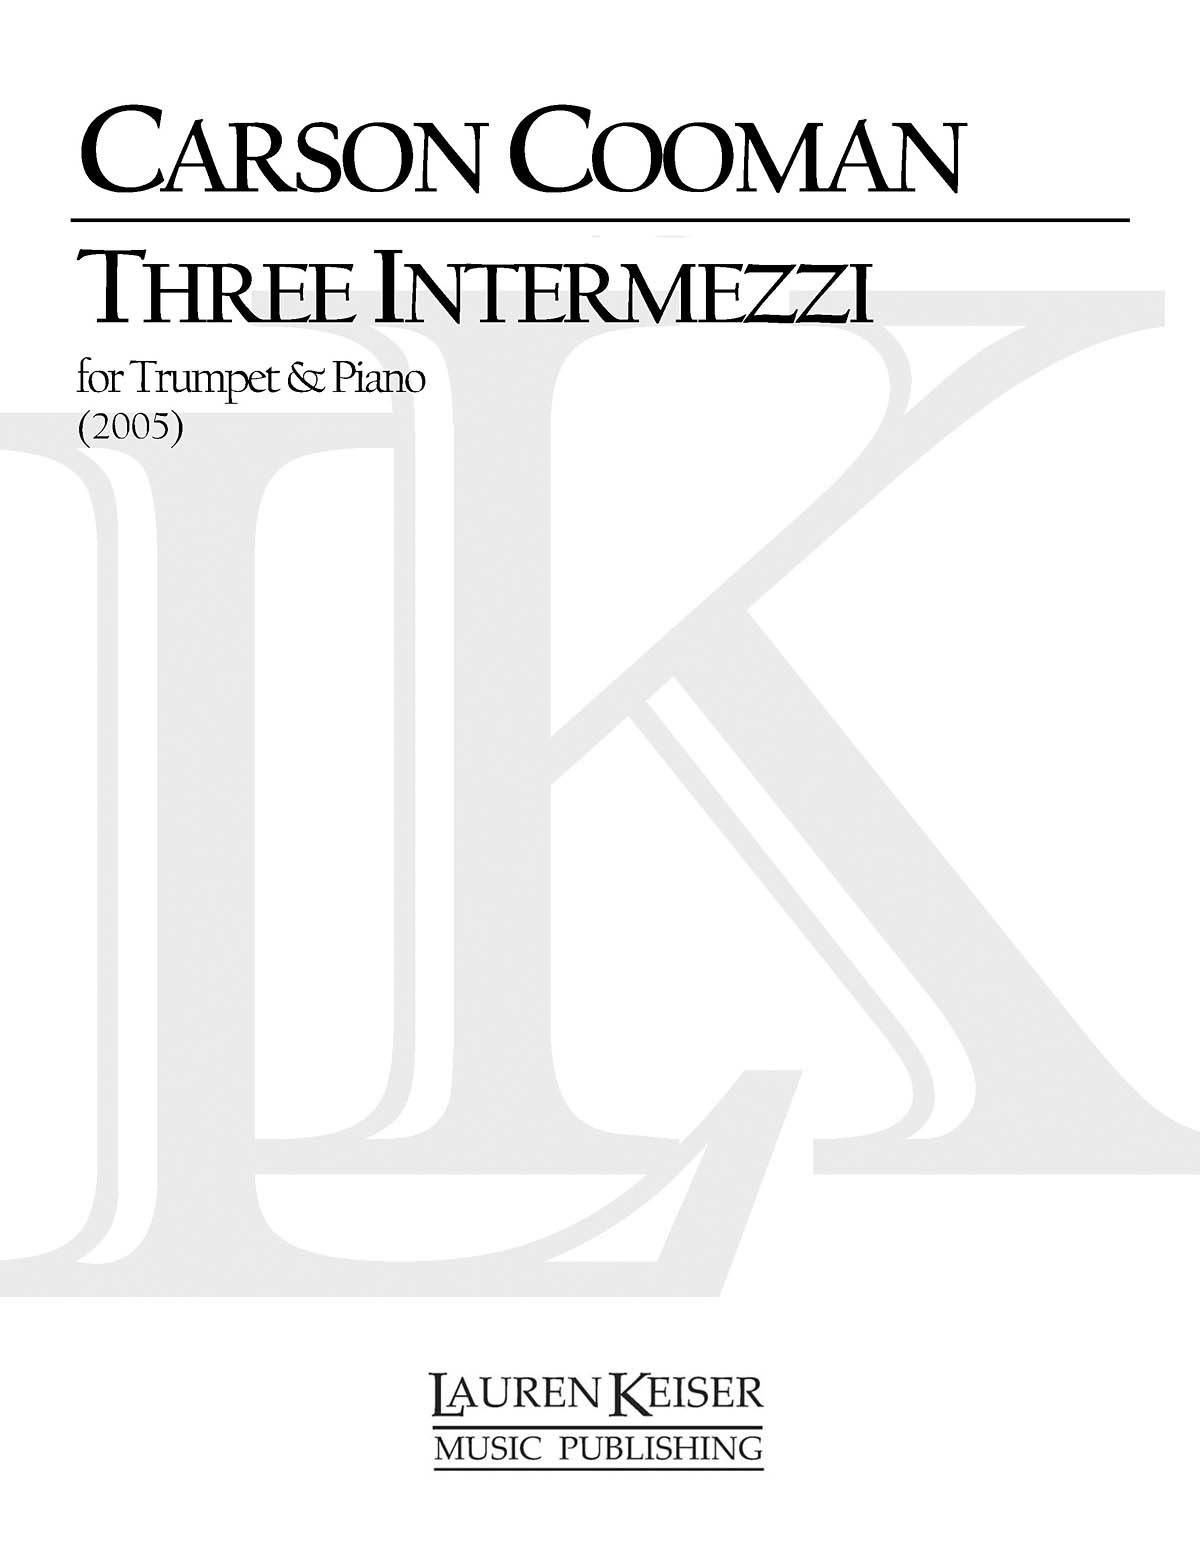 Three Intermezzi for Trumpet and Piano